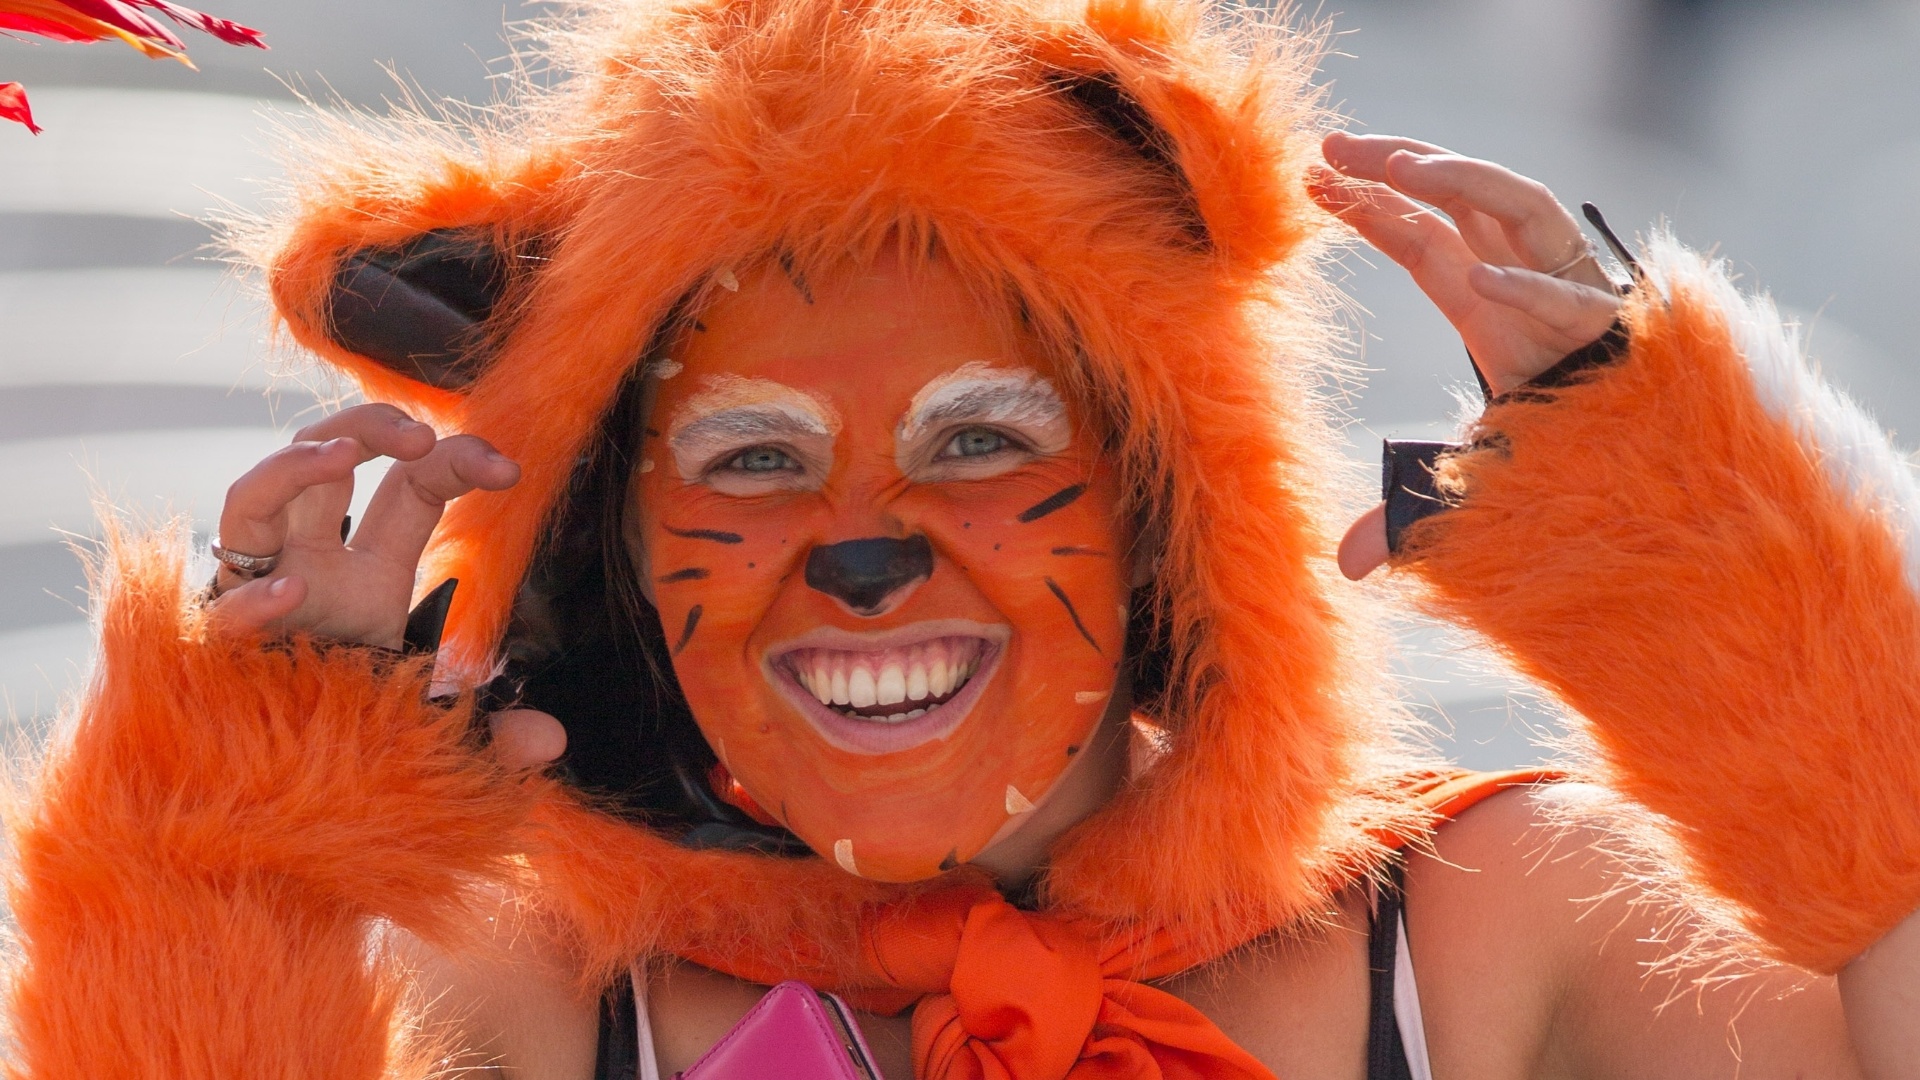 Holandesa vai ao Itaquerão fantasiada de leoa em jogo contra o Chile